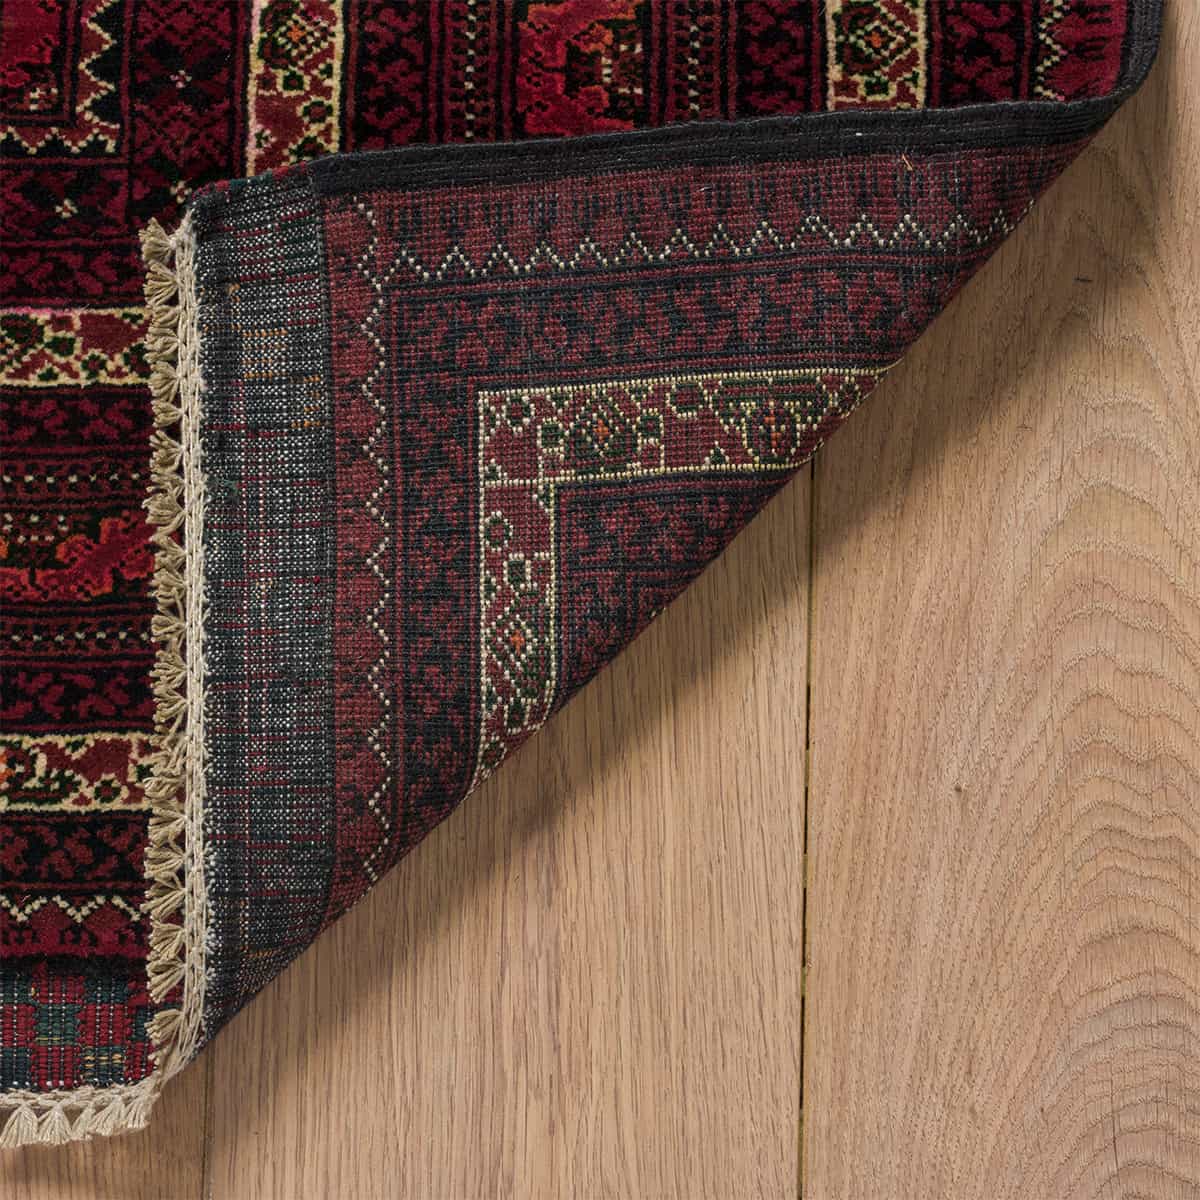 שטיח אפגני באשיר 00 אדום 289*193